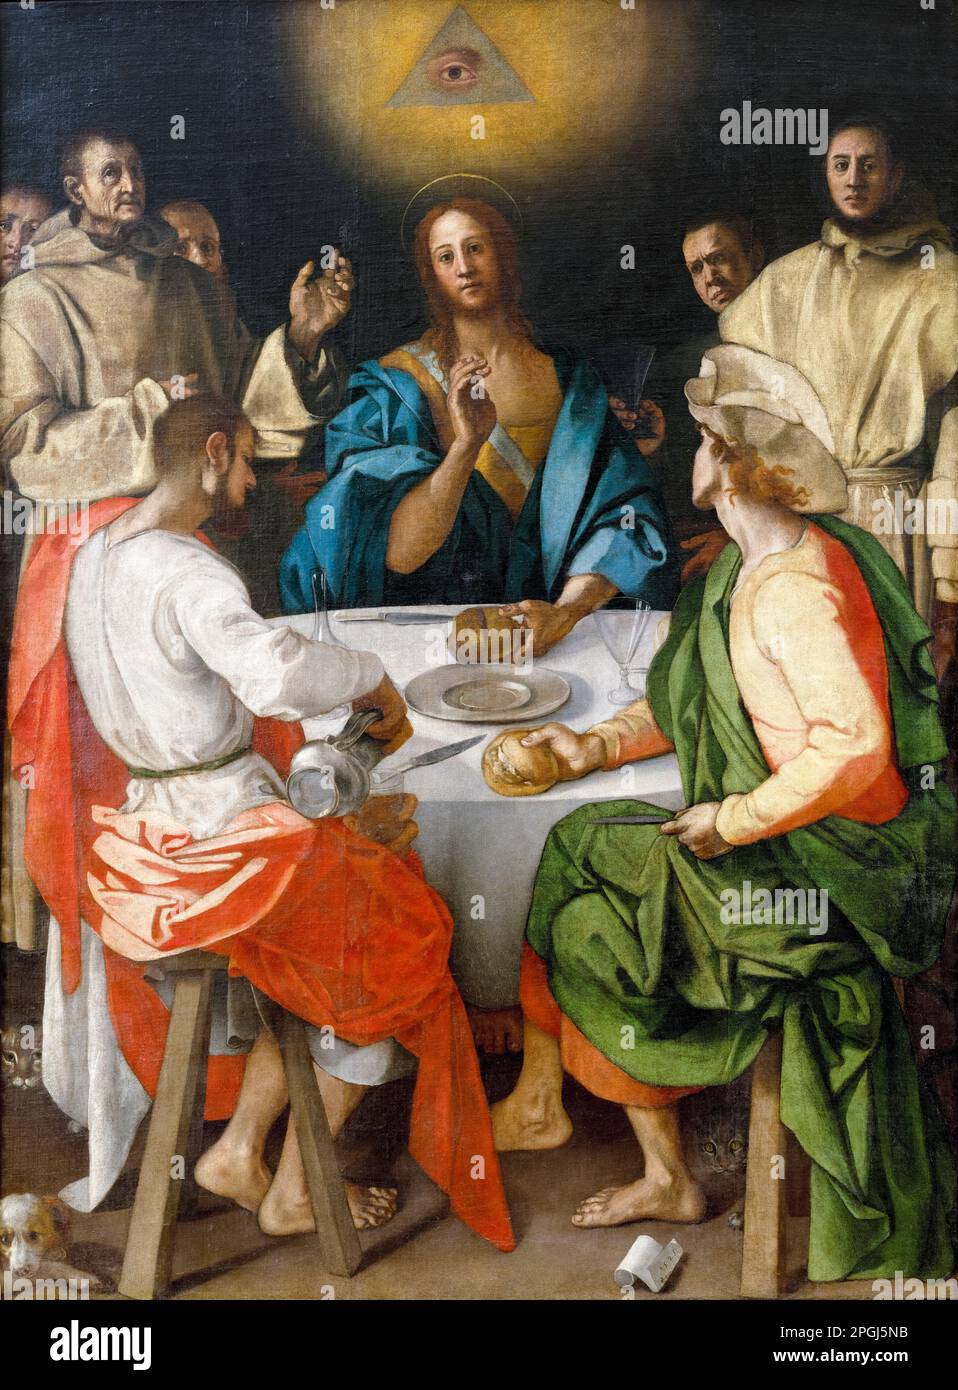 Cena a Emmaus, dipinto ad olio su tela di Jacopo da Pontormo, 1525 Foto Stock